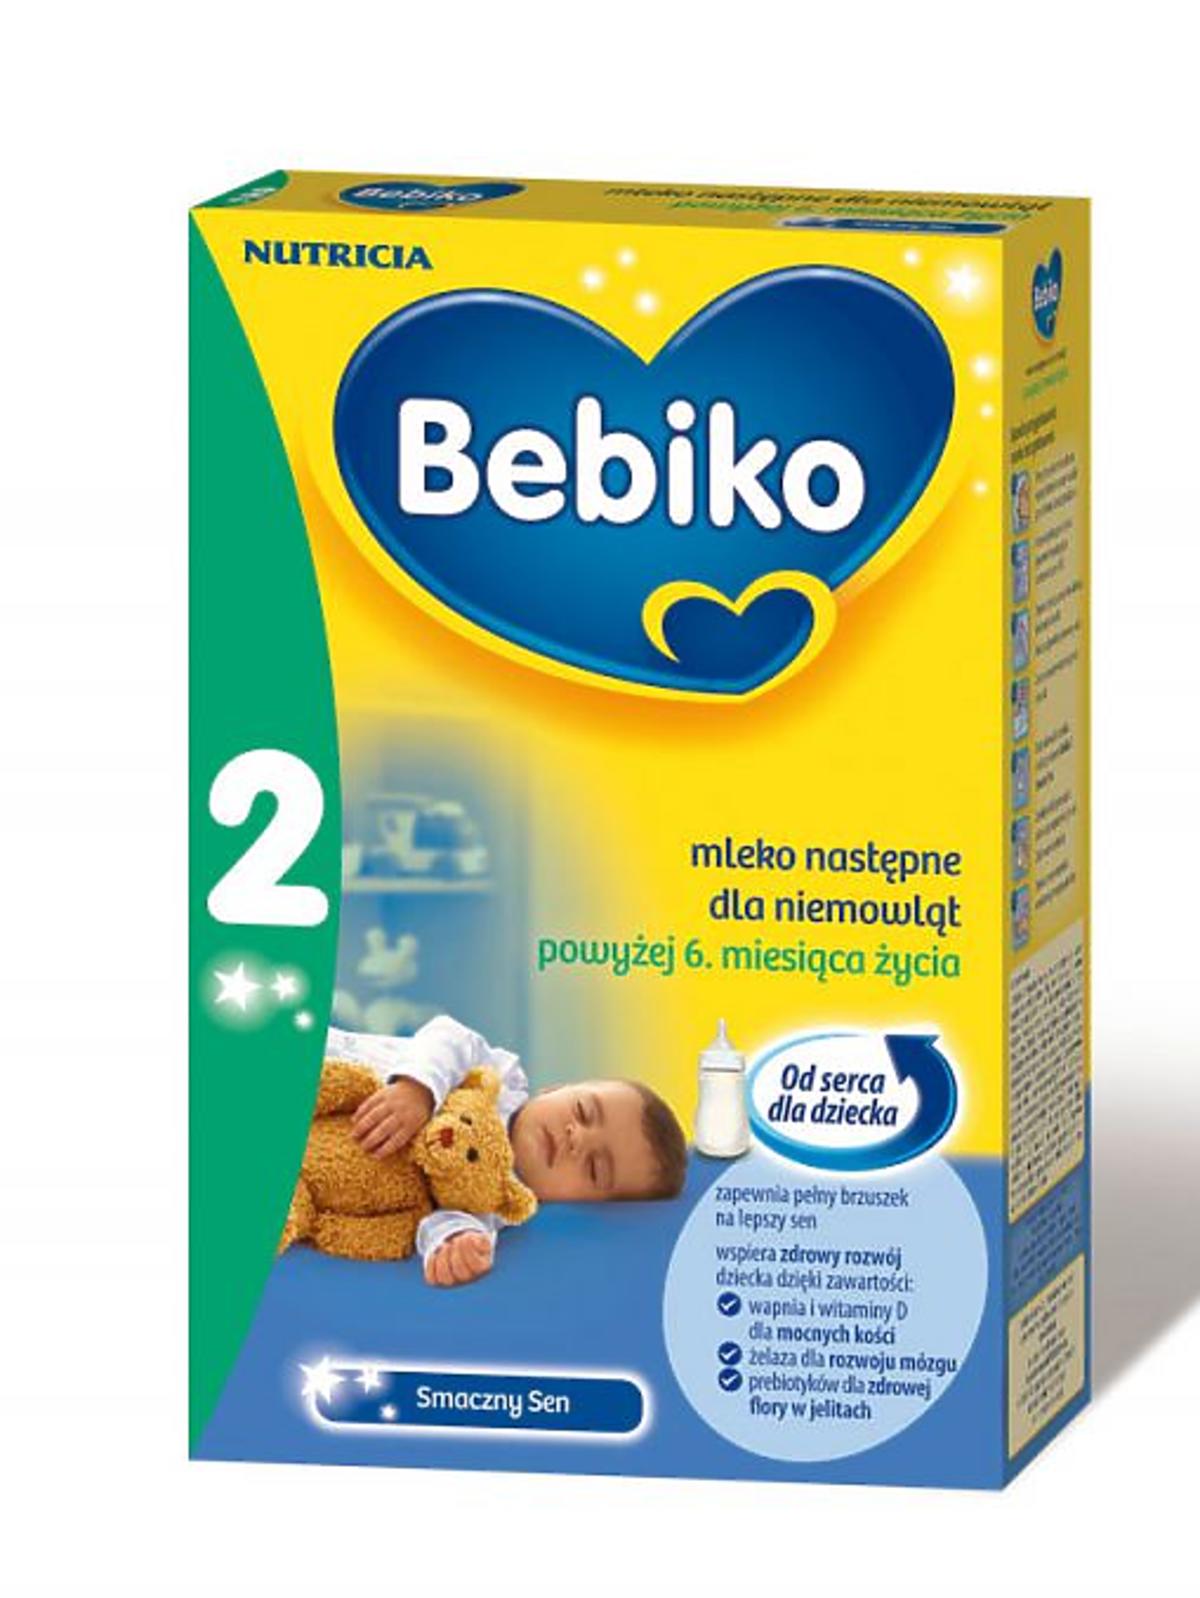 Bebiko-2-Smaczny-Sen.jpg